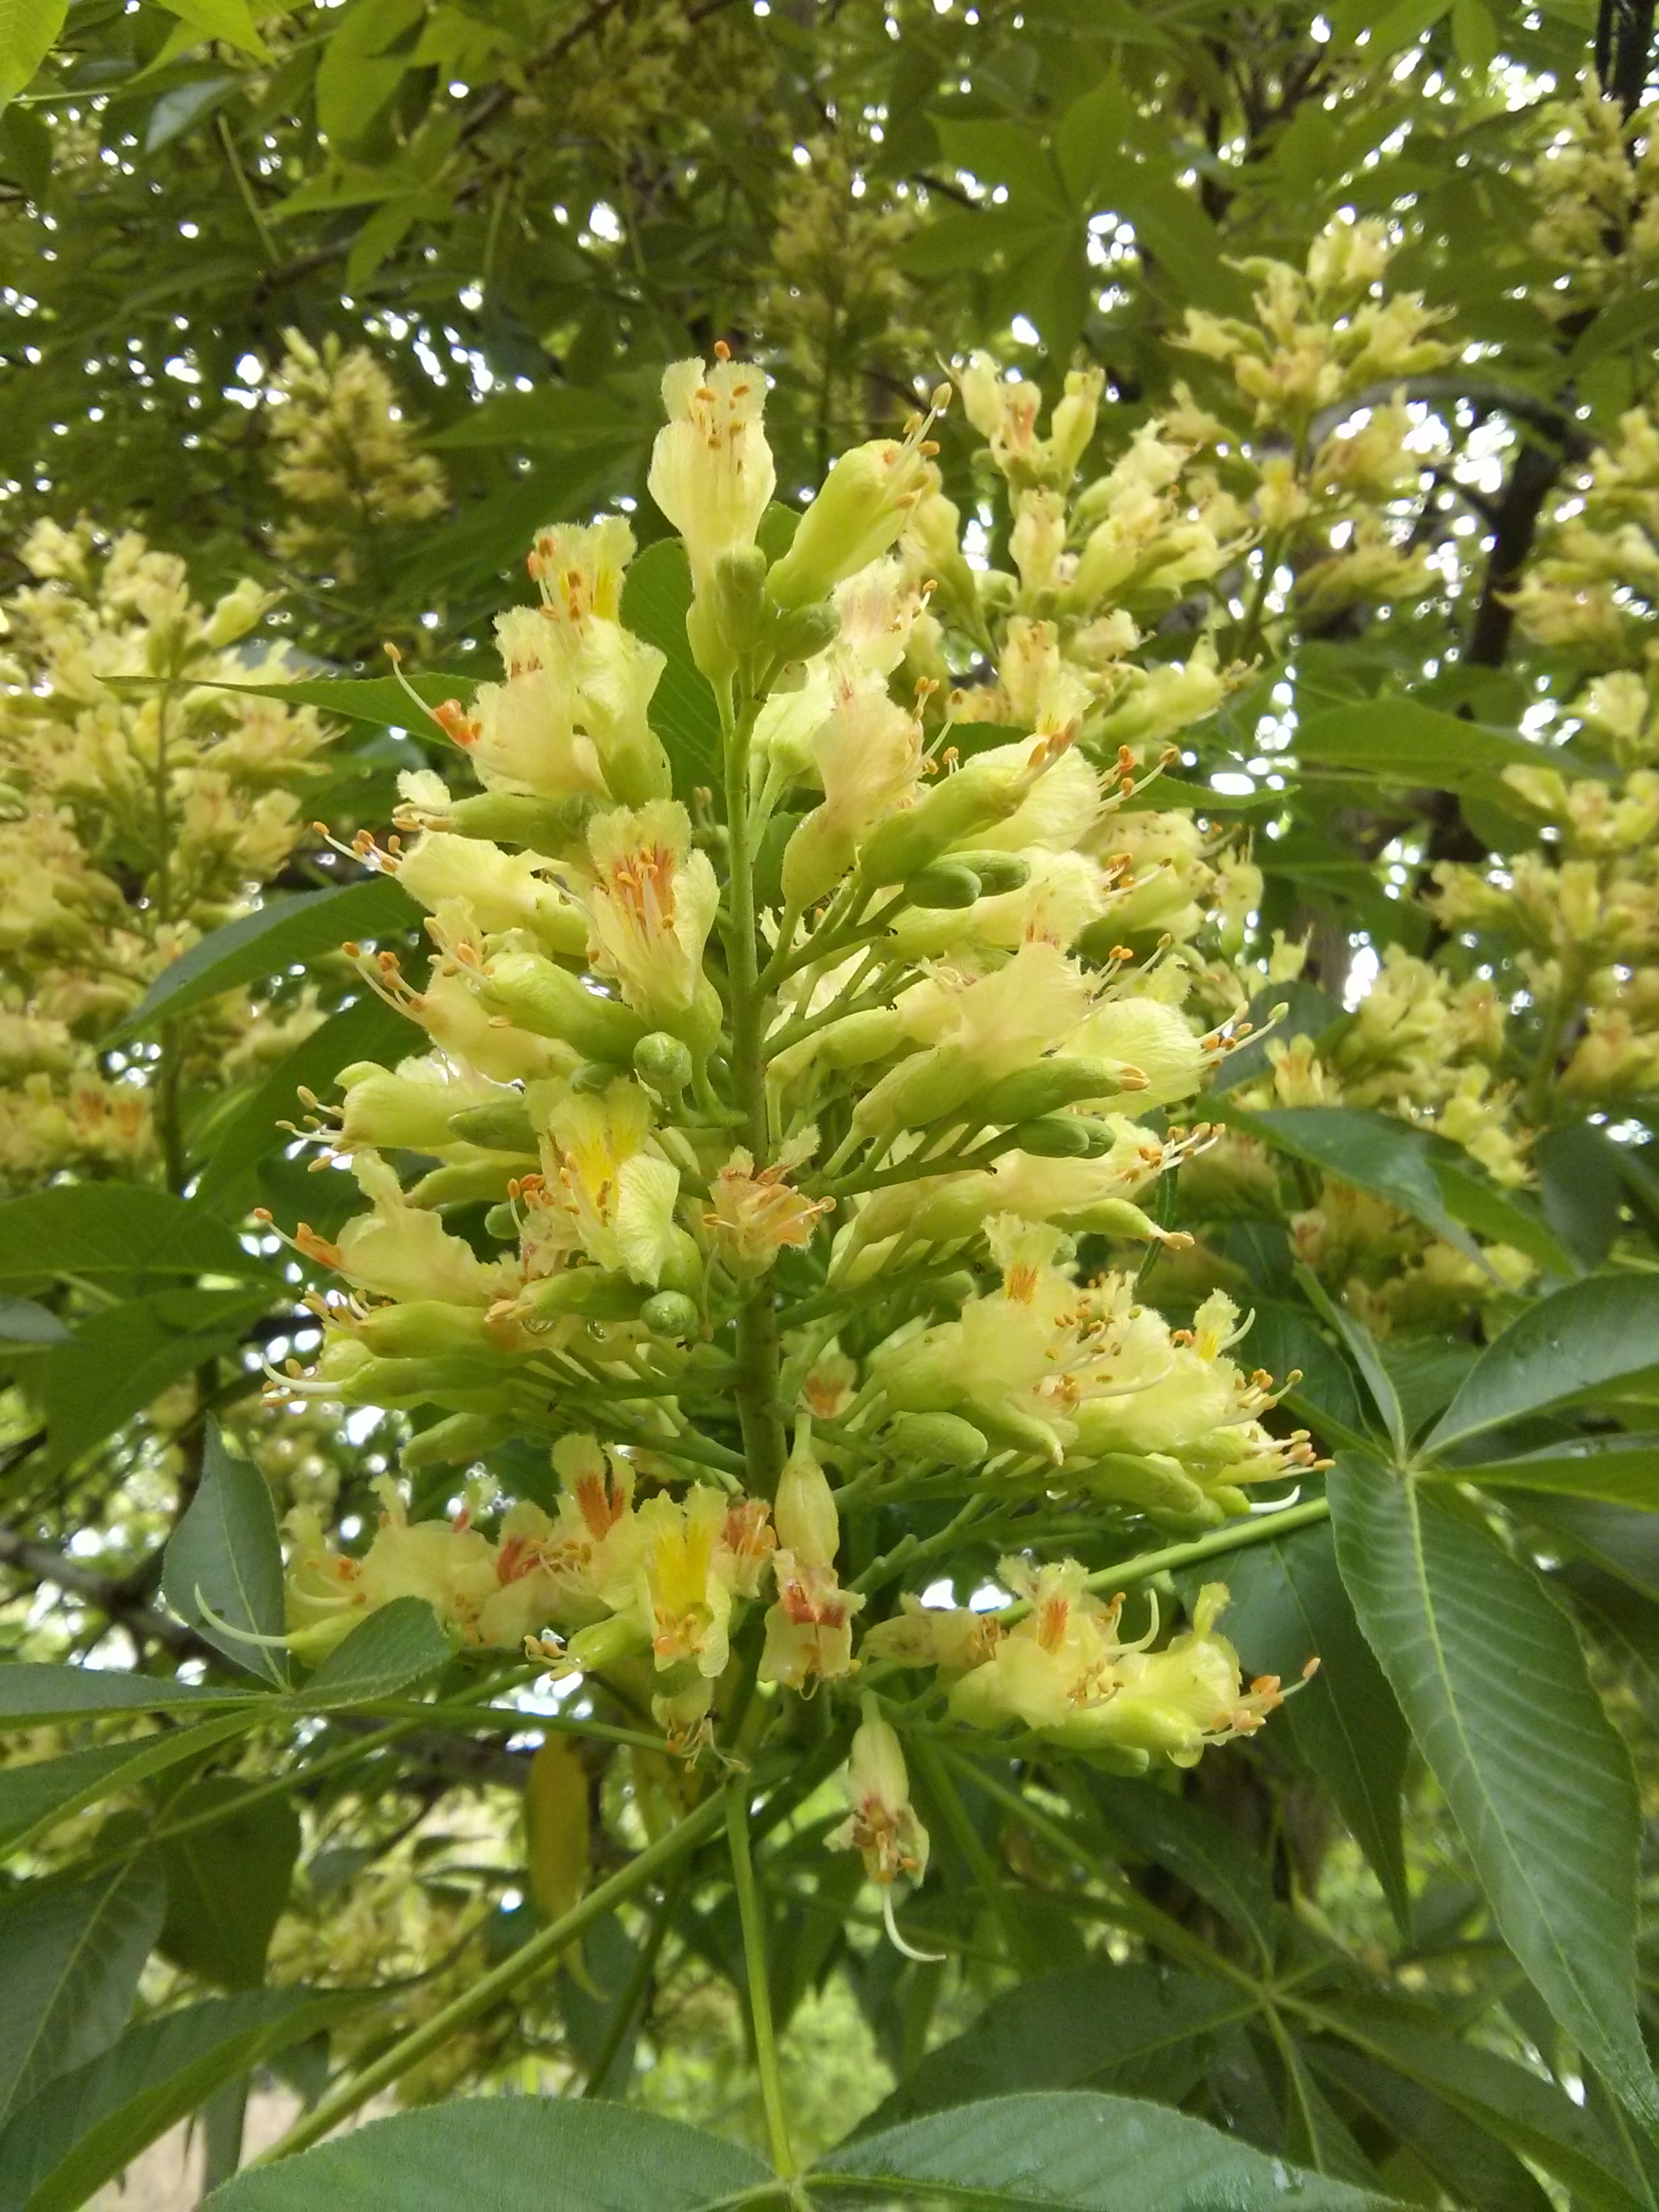 Ohio buckeye flower